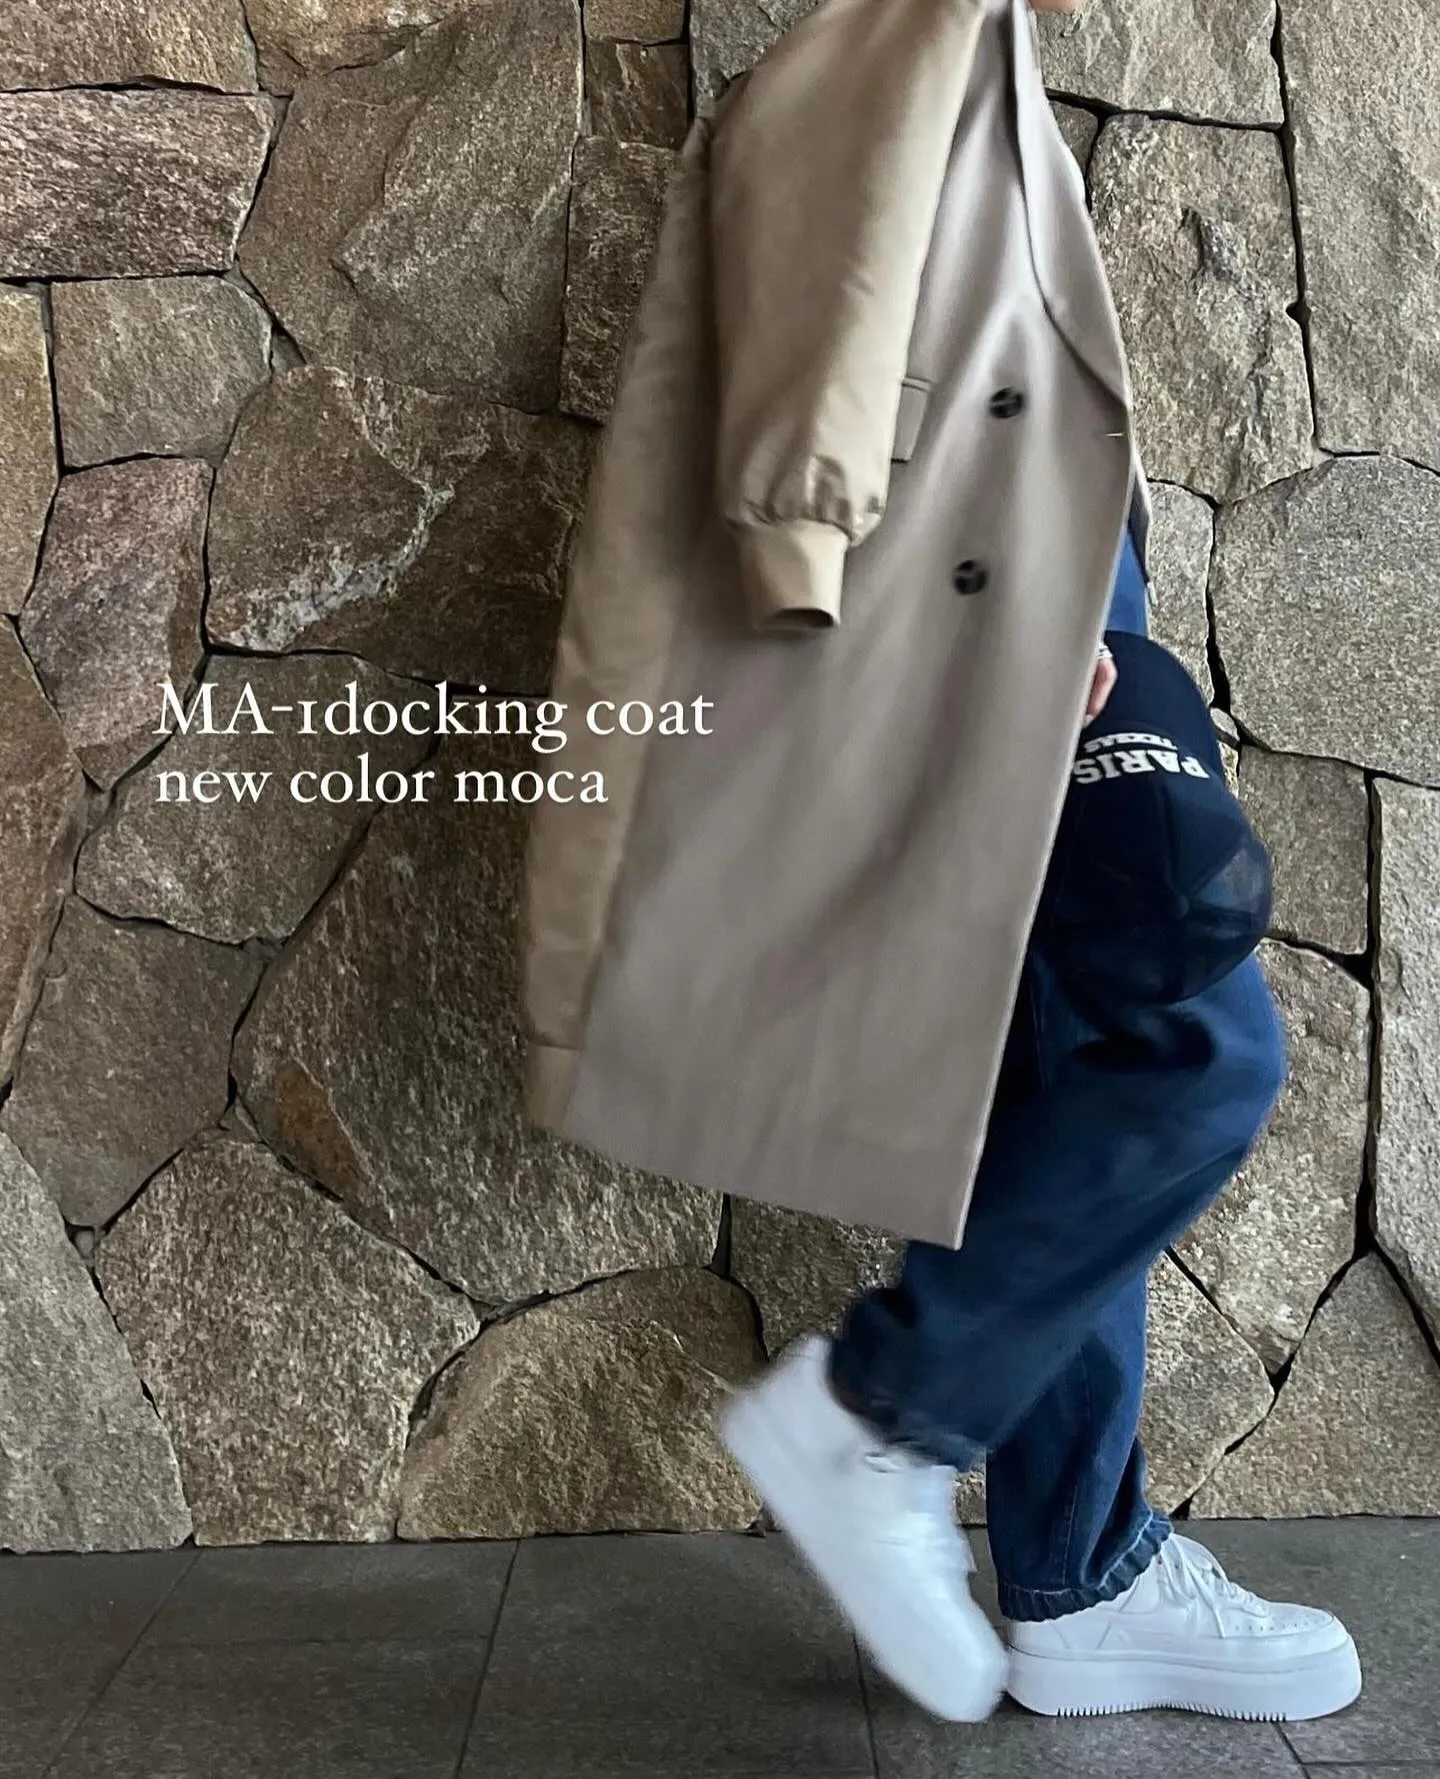 MA-1docking coat